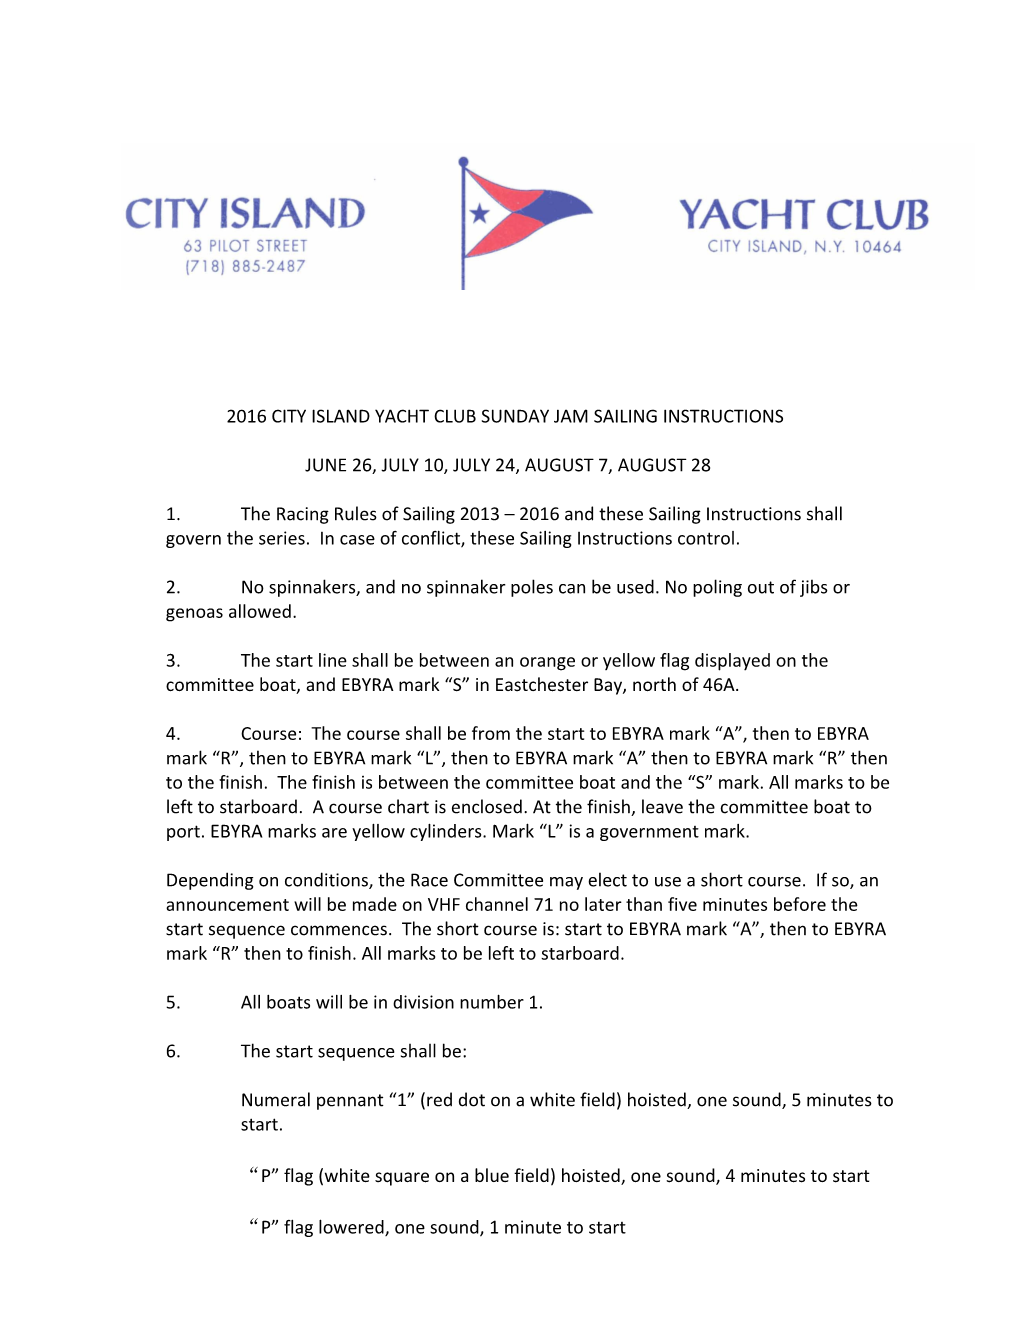 2016 City Island Yacht Club Sunday Jam Sailing Instructions